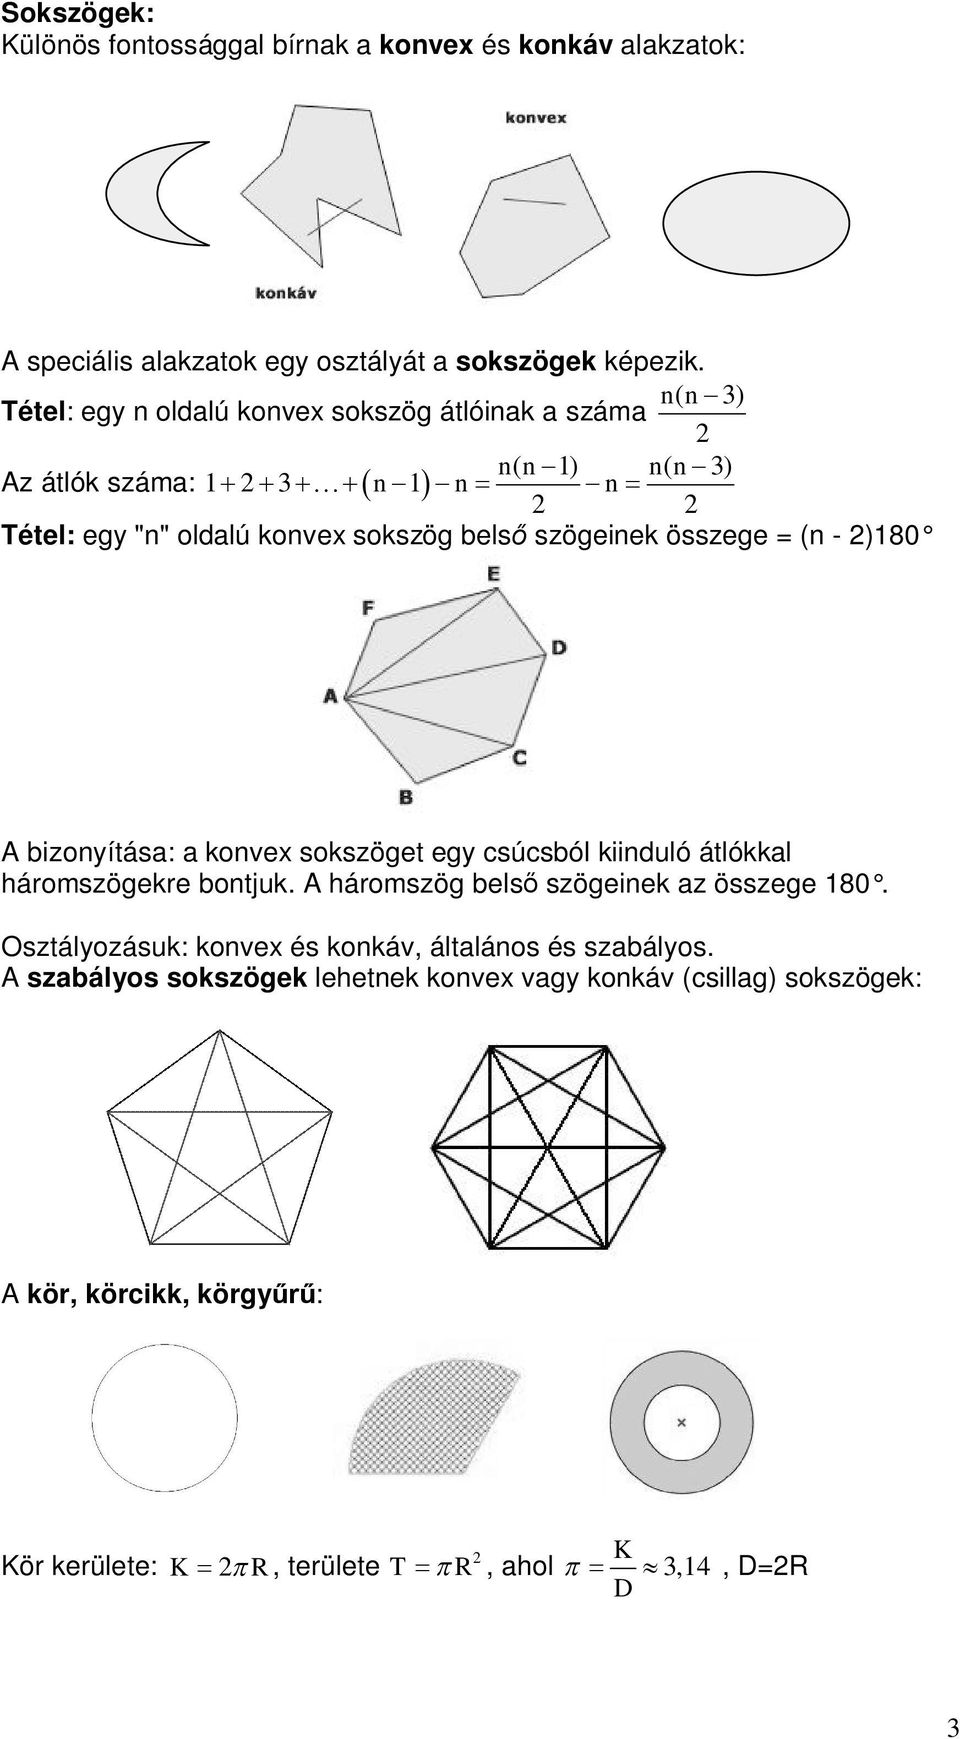 összege = (n - )0 A izonyítás: konvex sokszöget egy súsól kiinduló átlókkl háromszögekre ontjuk. A háromszög els szögeinek z összege 0.